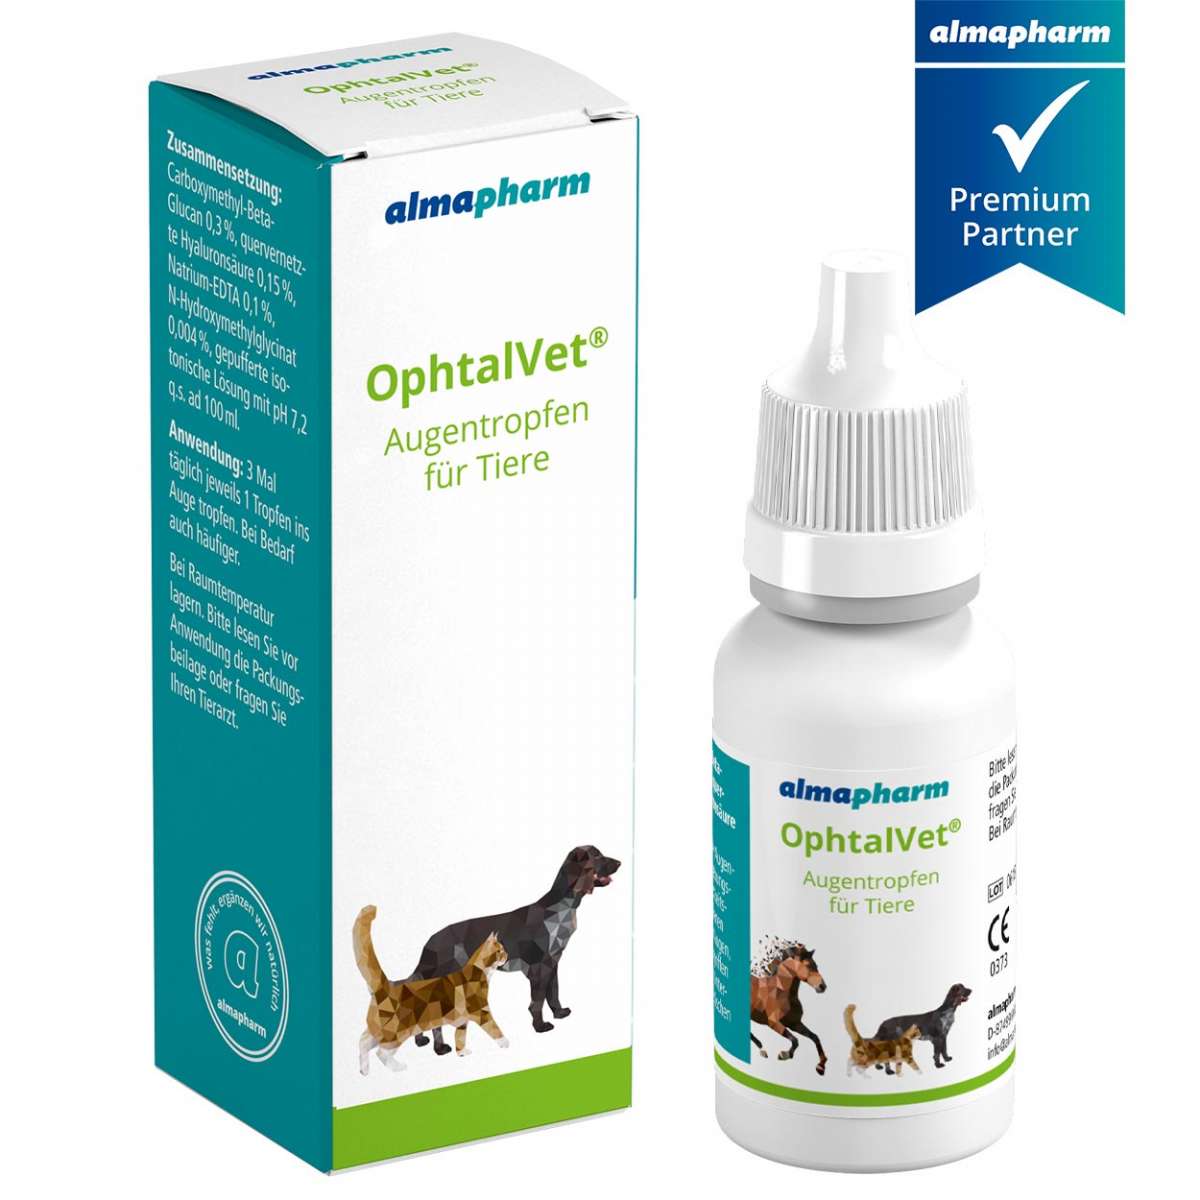 OphtalVet Augentropfen almapharm für Hund Katze Pferd Augenpflege